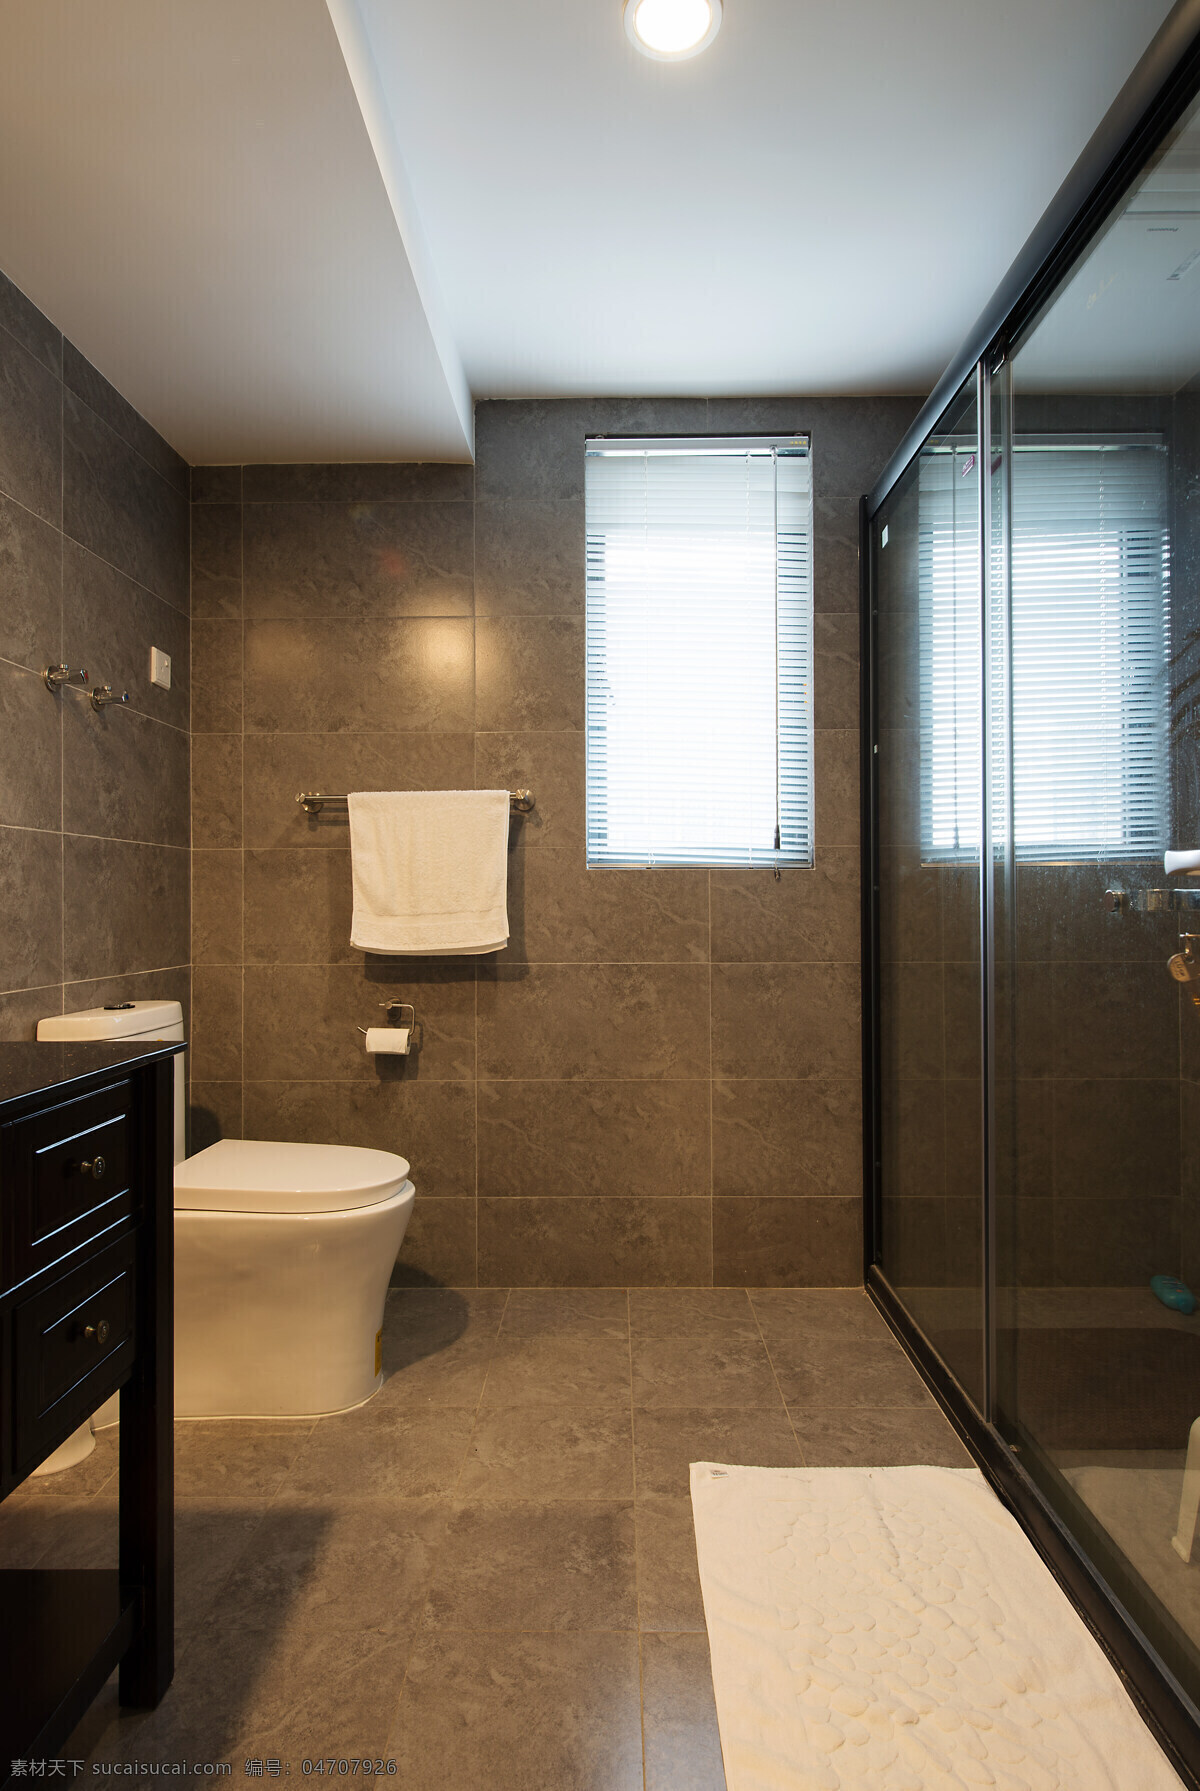 现代 浴室 深色 格子 背景 墙 室内装修 效果图 浴室装修 瓷砖地板 黑色桌面 圆形吊灯